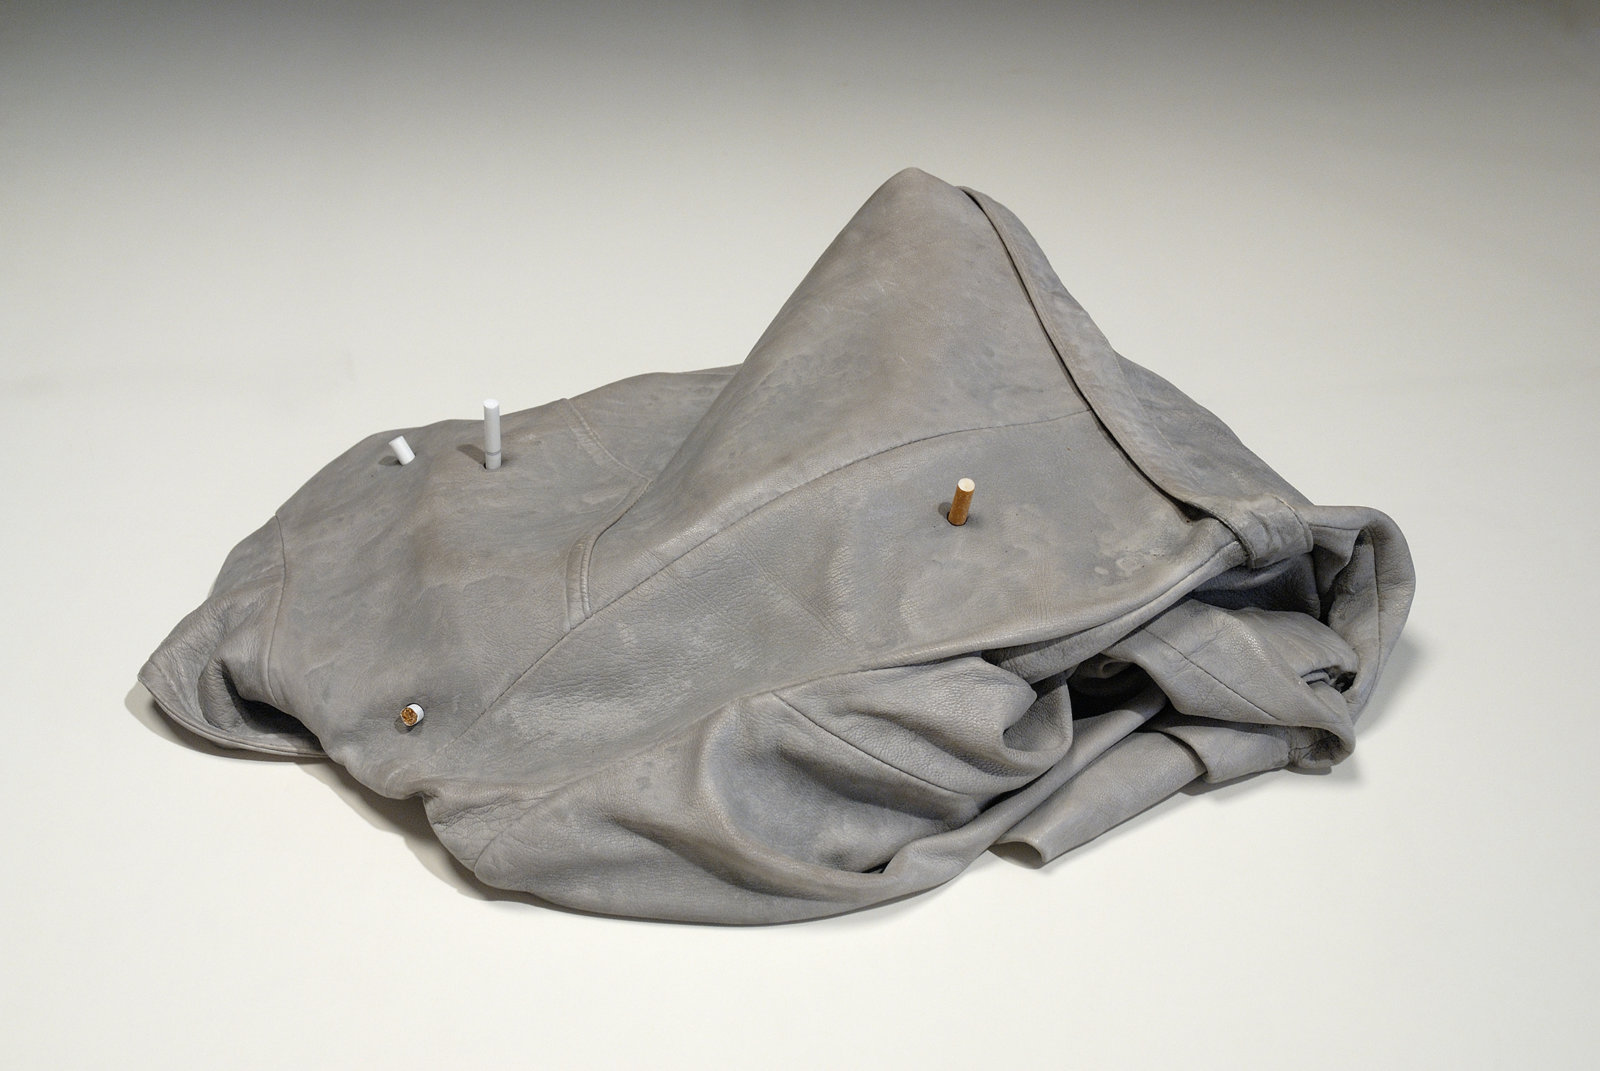 Liz Magor, Leather (4 cig), 2008, polymerized gypsum, cigarettes, 7 x 17 x 24 in. (17 x 43 x 61 cm)